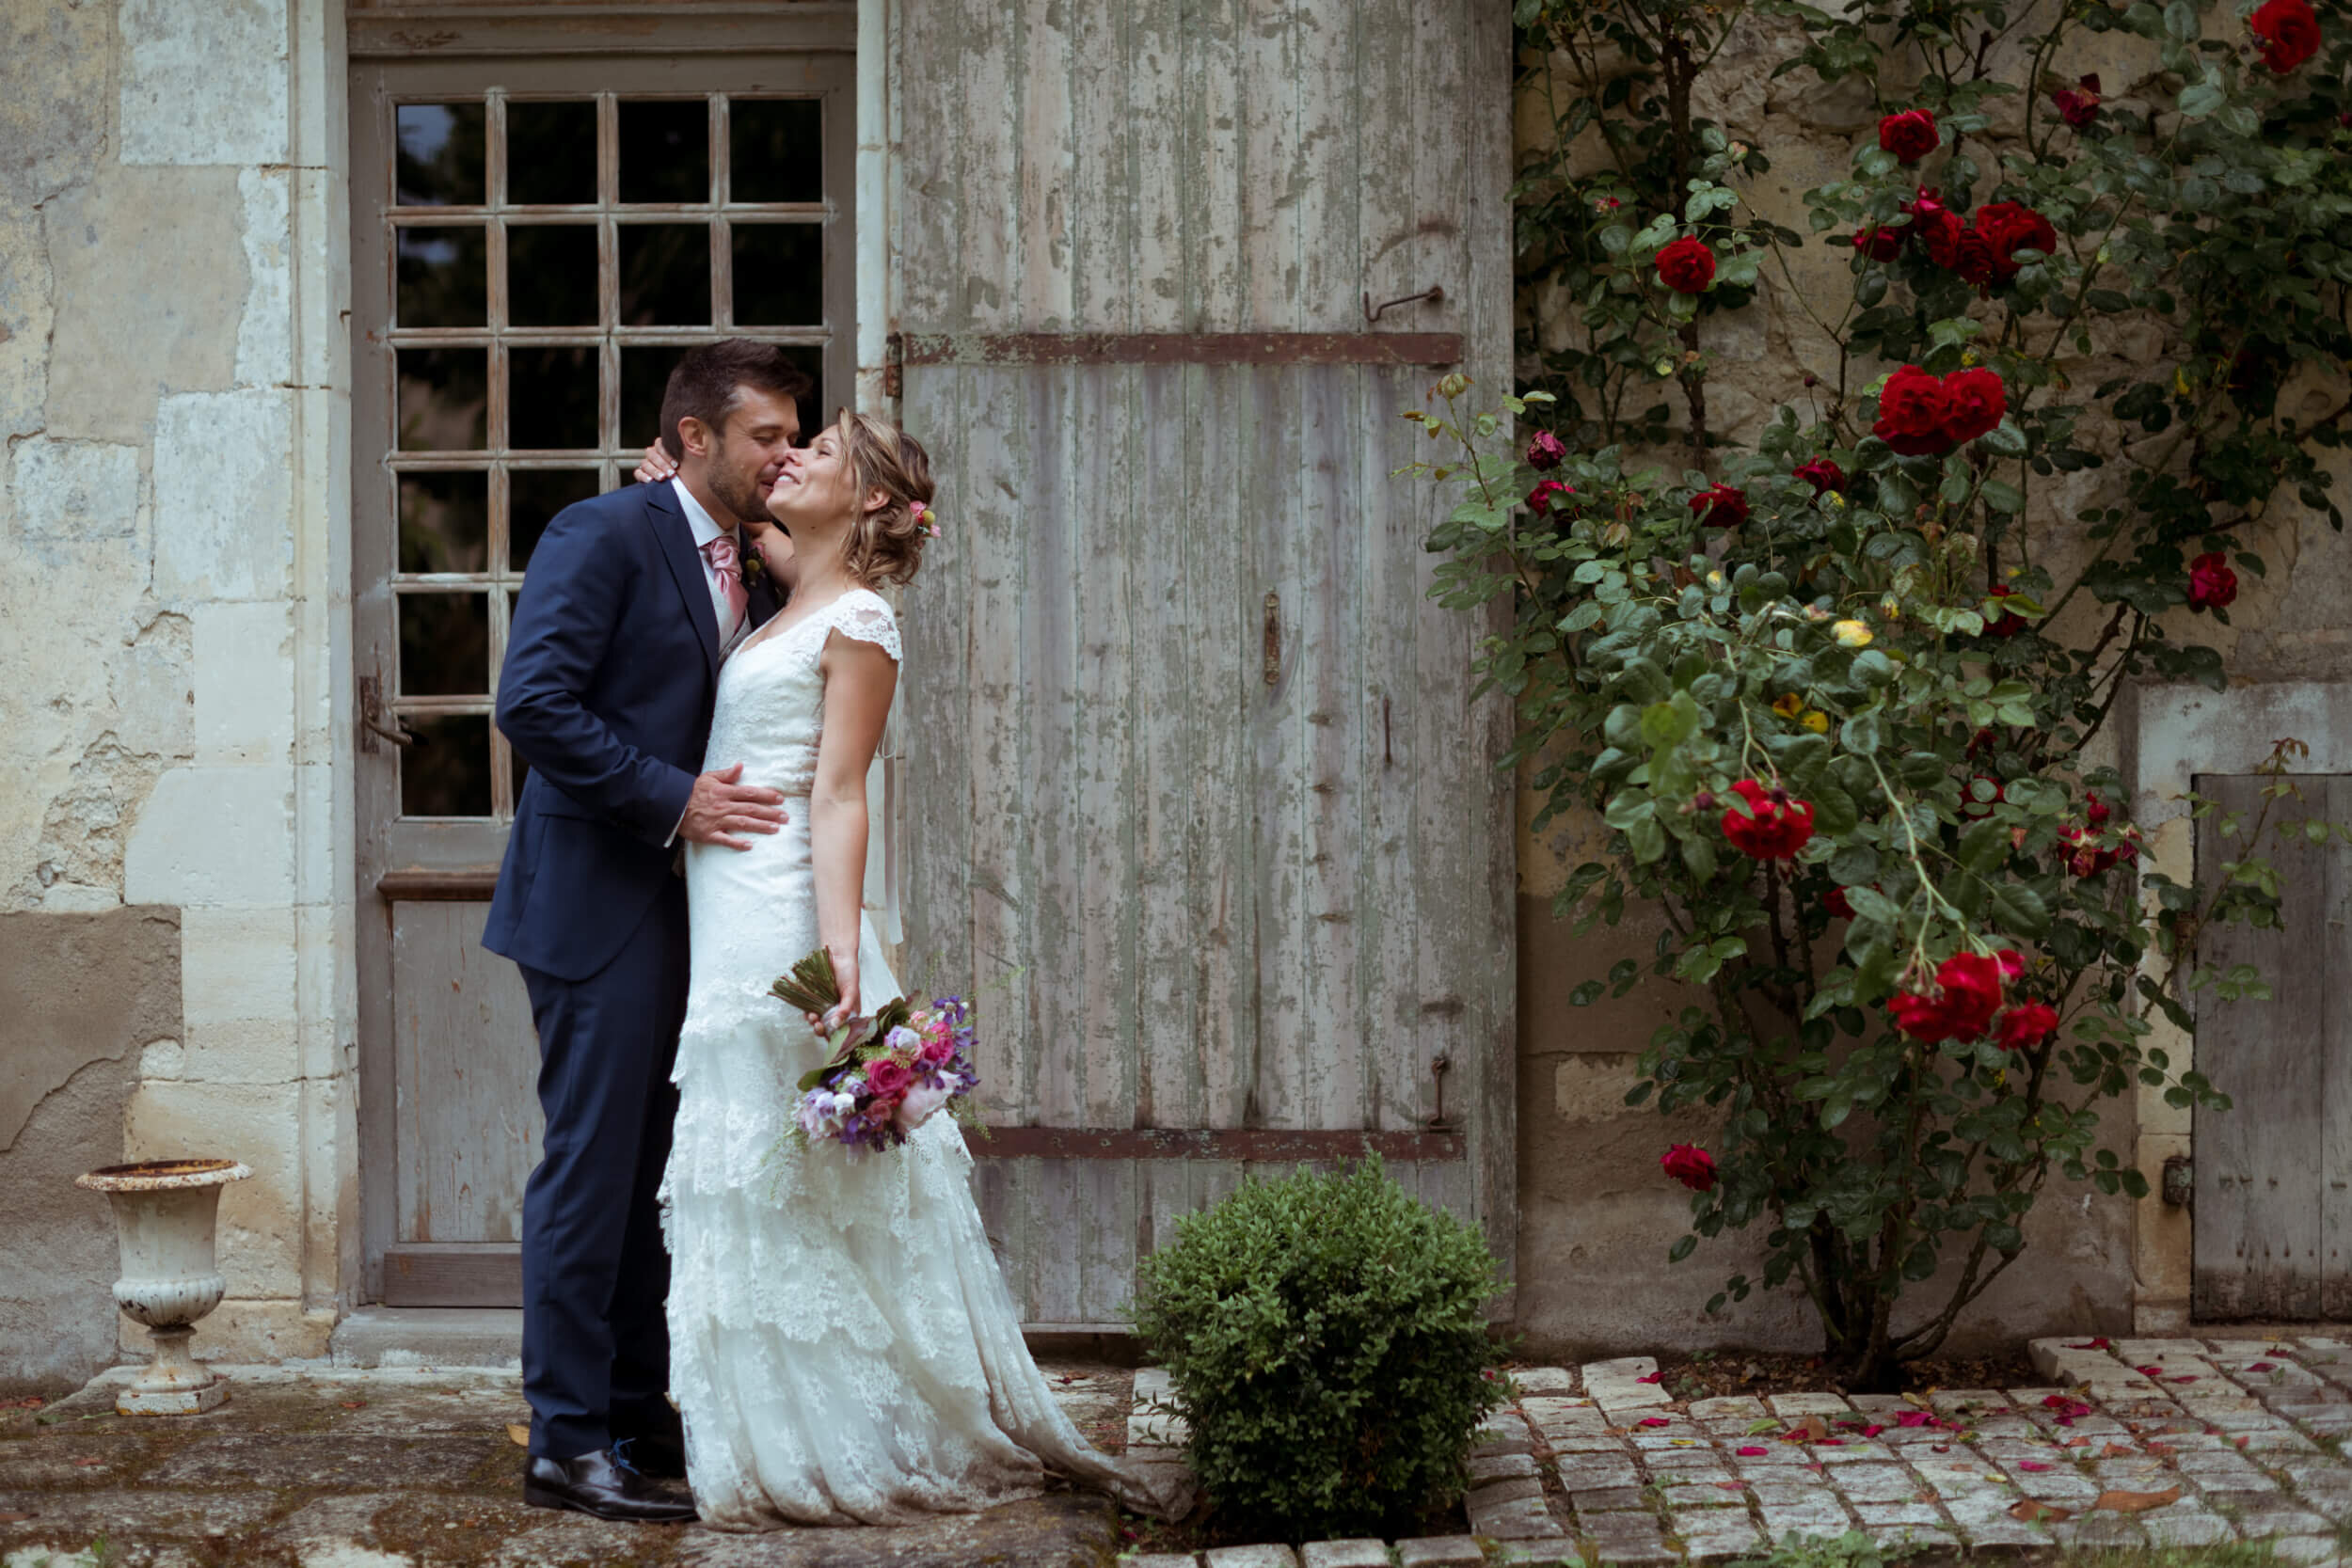 Puyrigaud photographe mariage wedding photographer couple